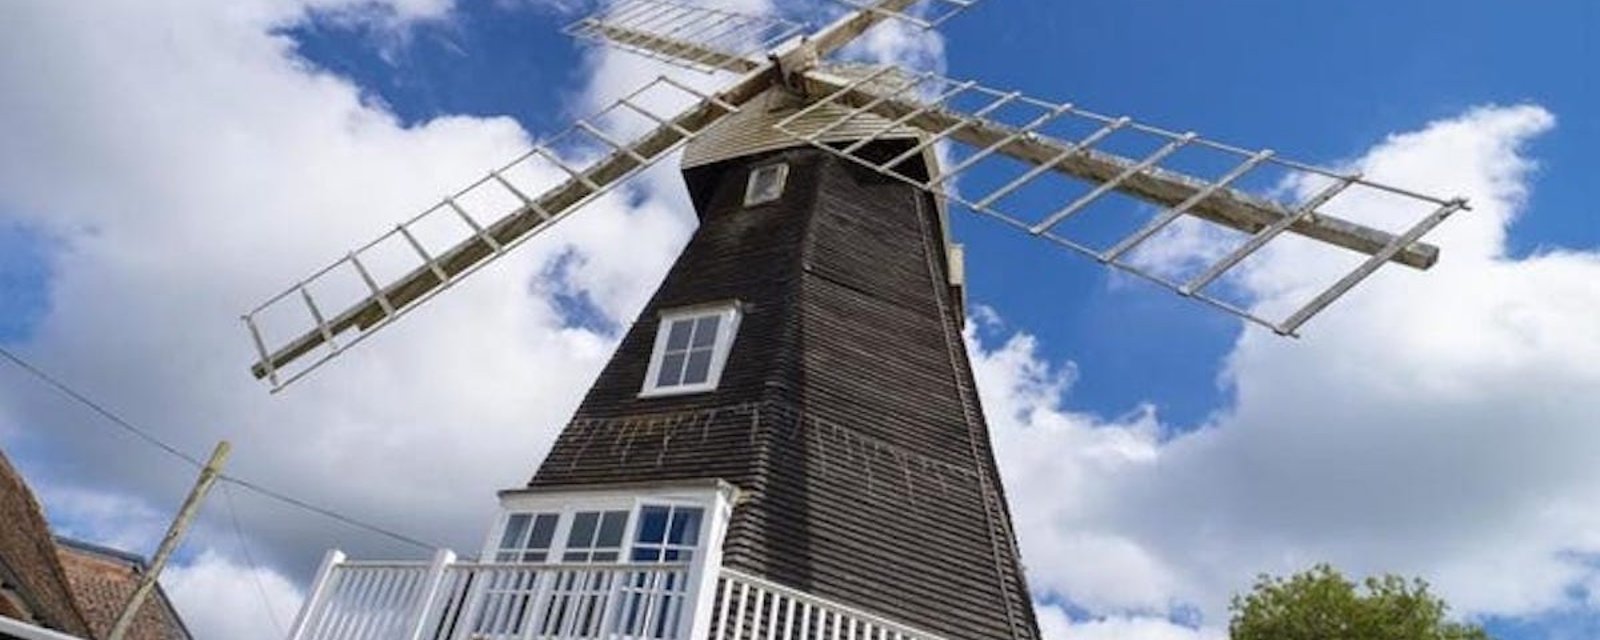 À vendre: un moulin à vent historique converti en une maison de trois chambres 